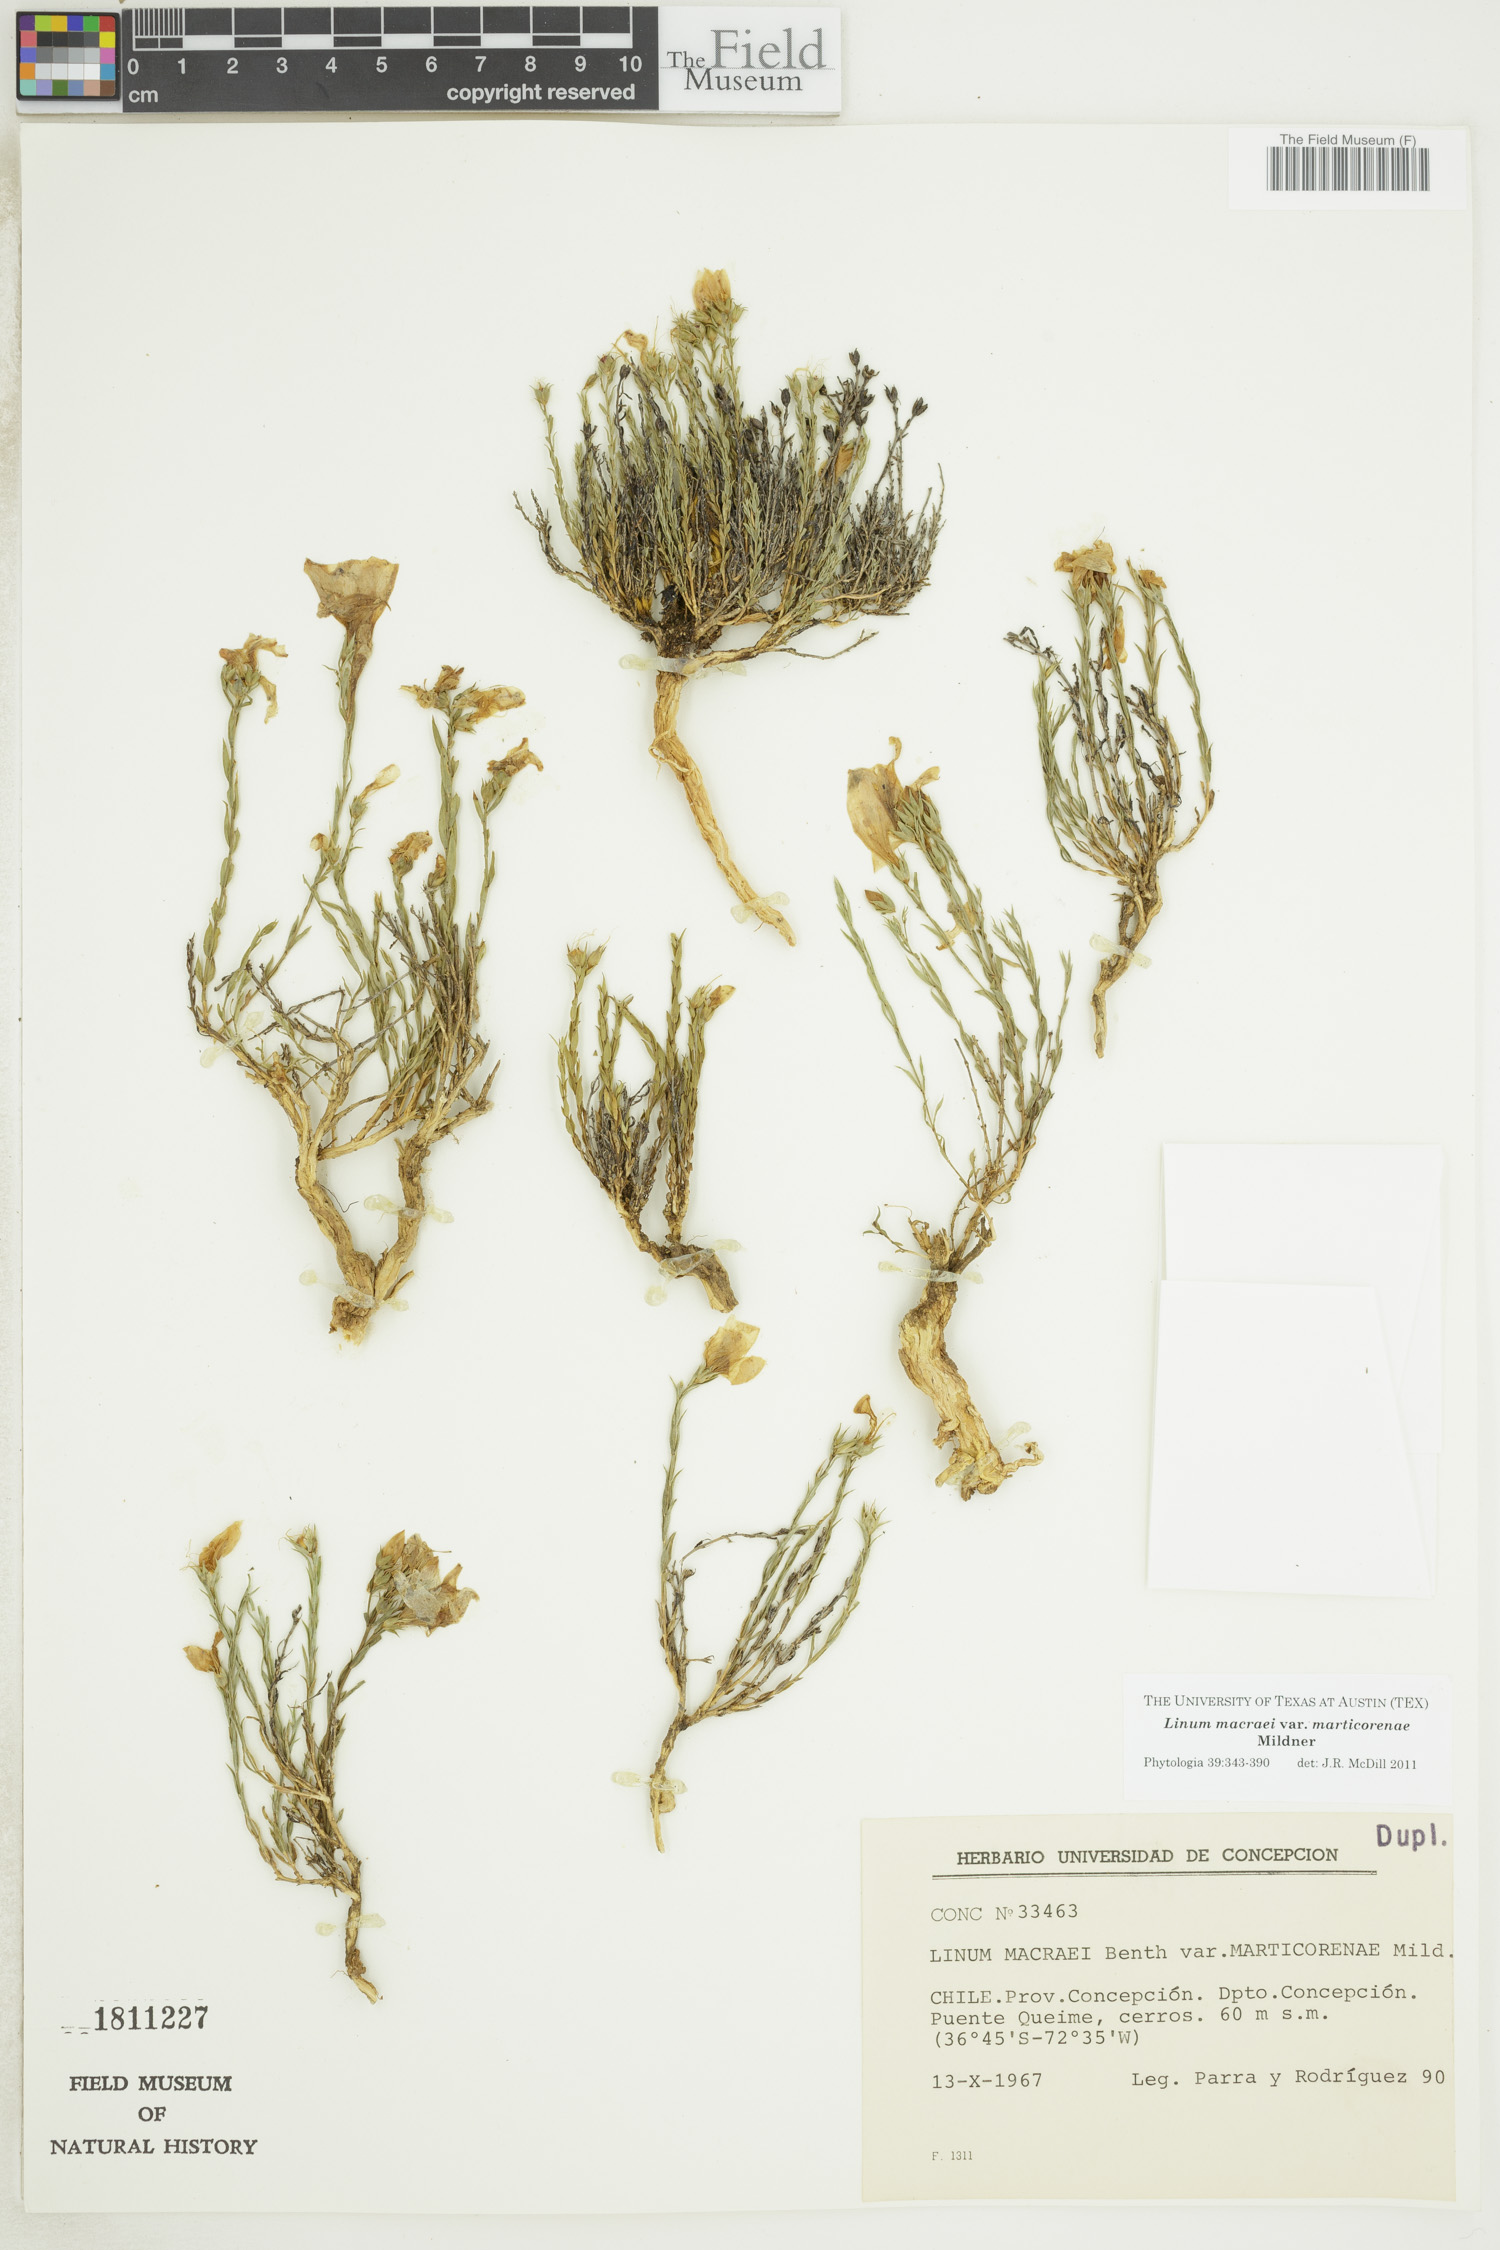 Linum macraei var. marticorenae image